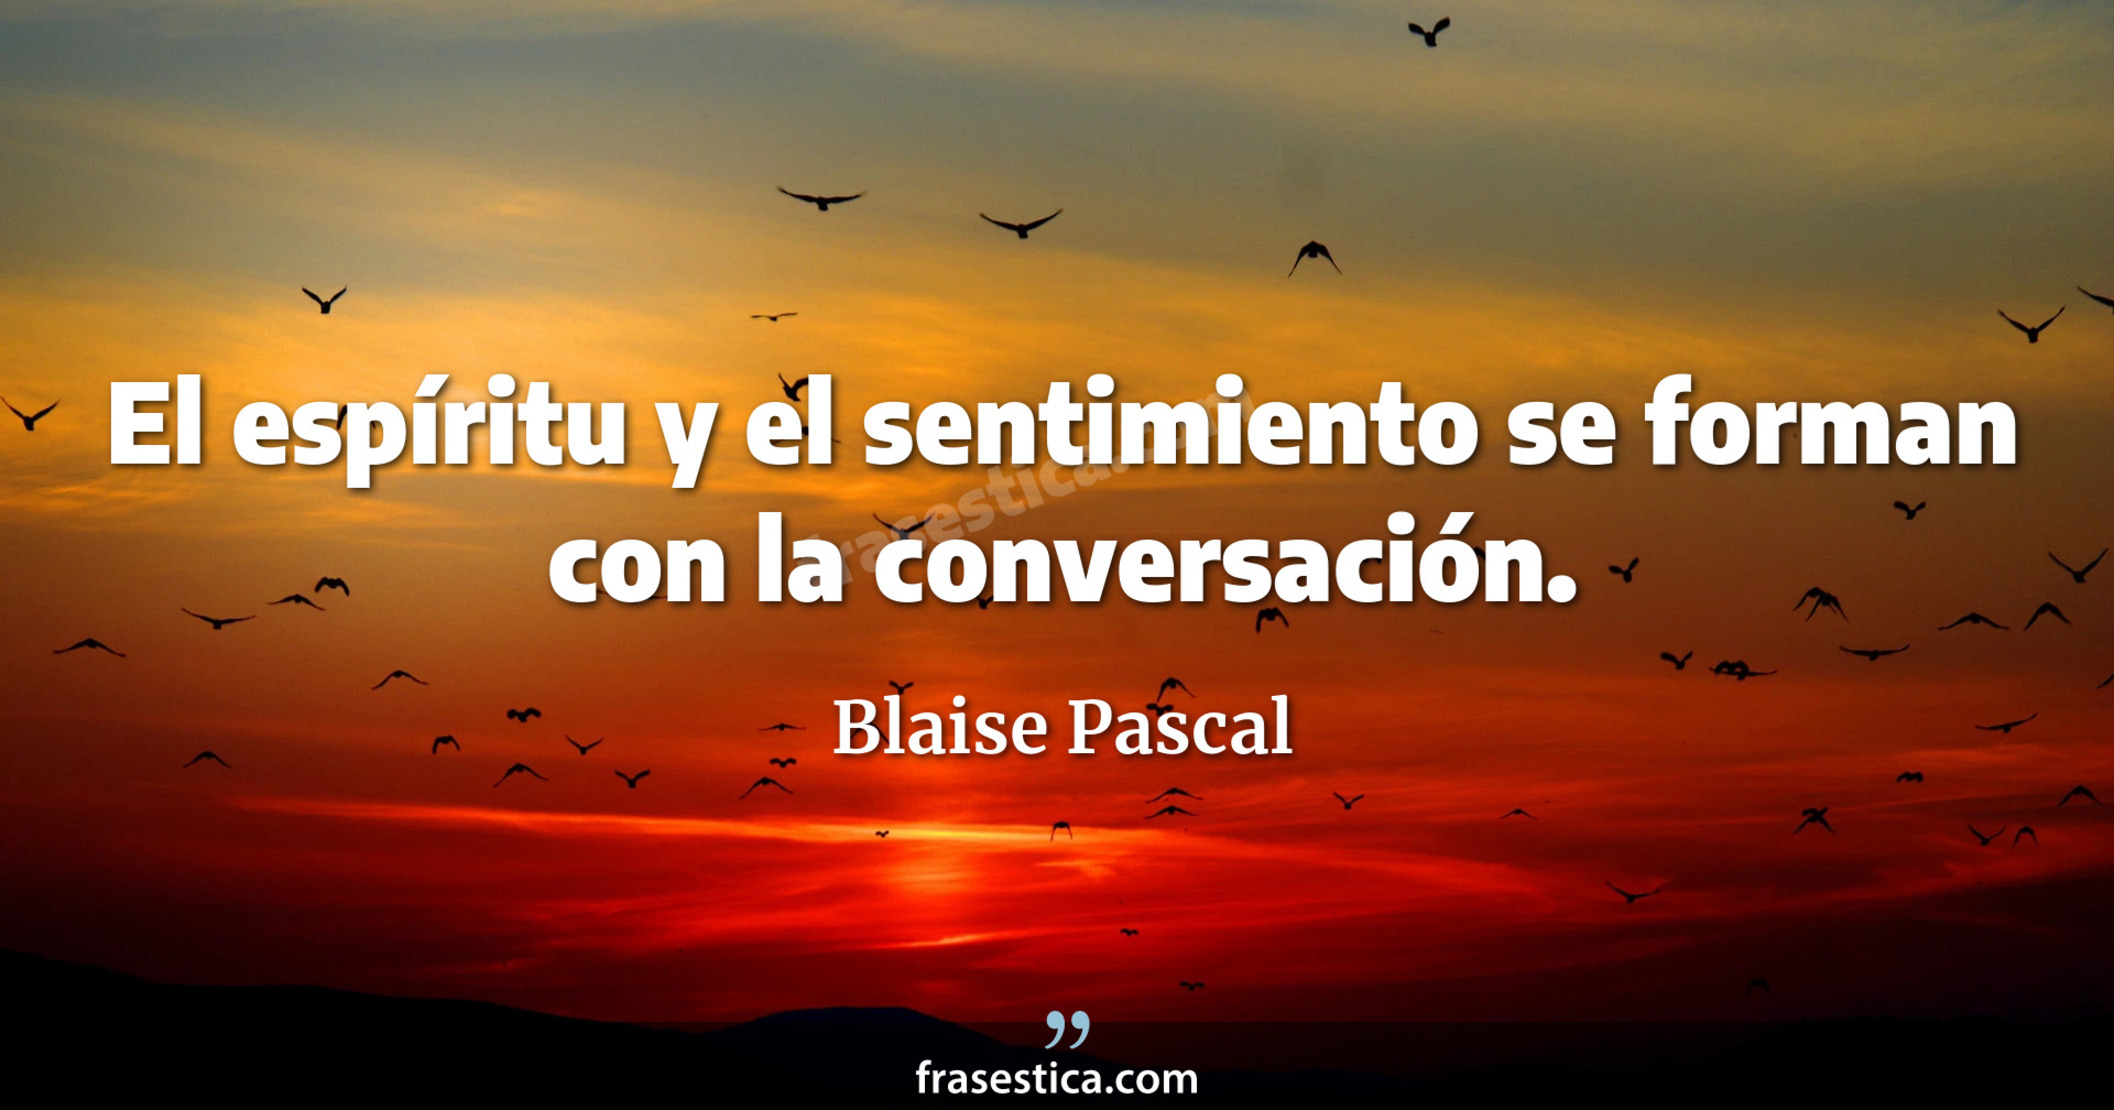 El espíritu y el sentimiento se forman con la conversación. - Blaise Pascal